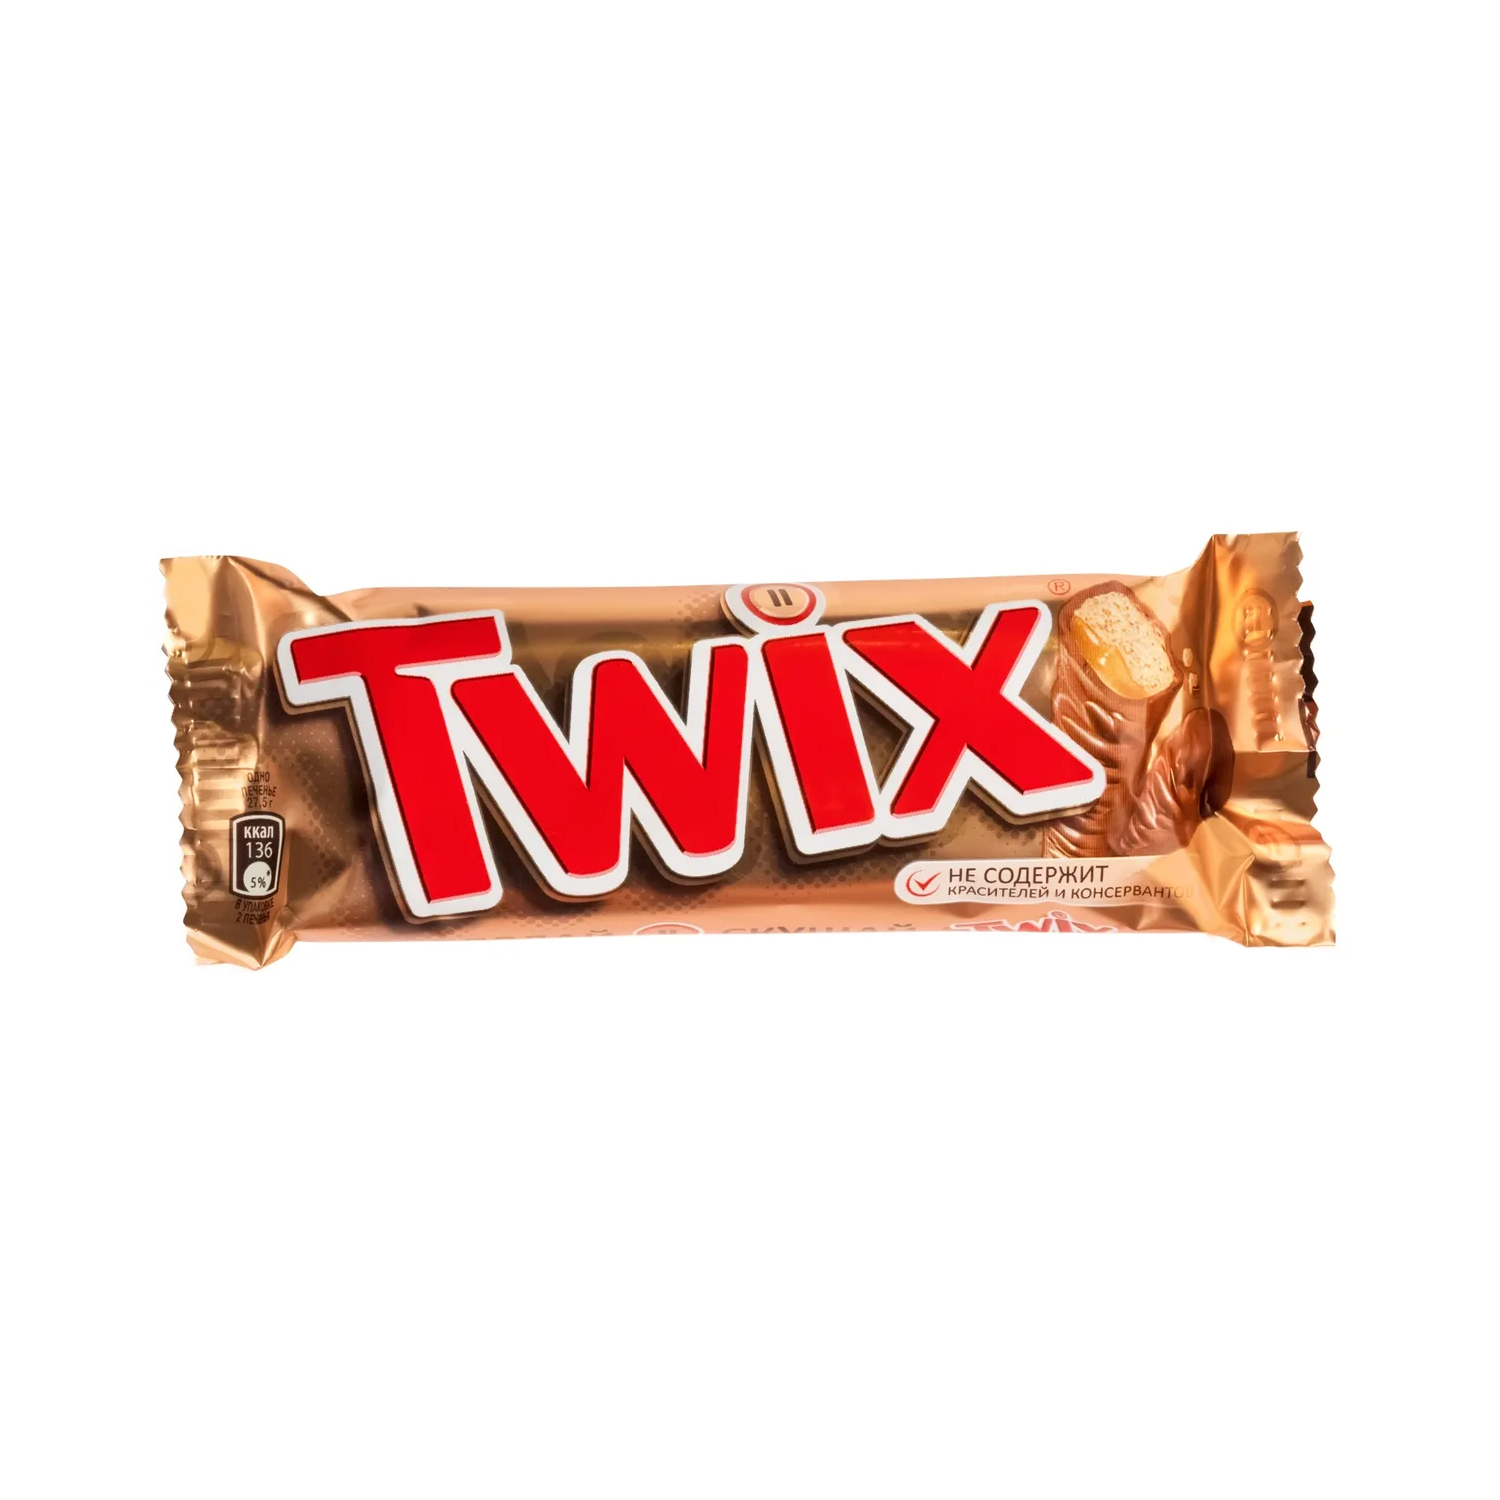 Шоколадный батончик Twix, 55 г шоколадный батончик twix xtra 82 г